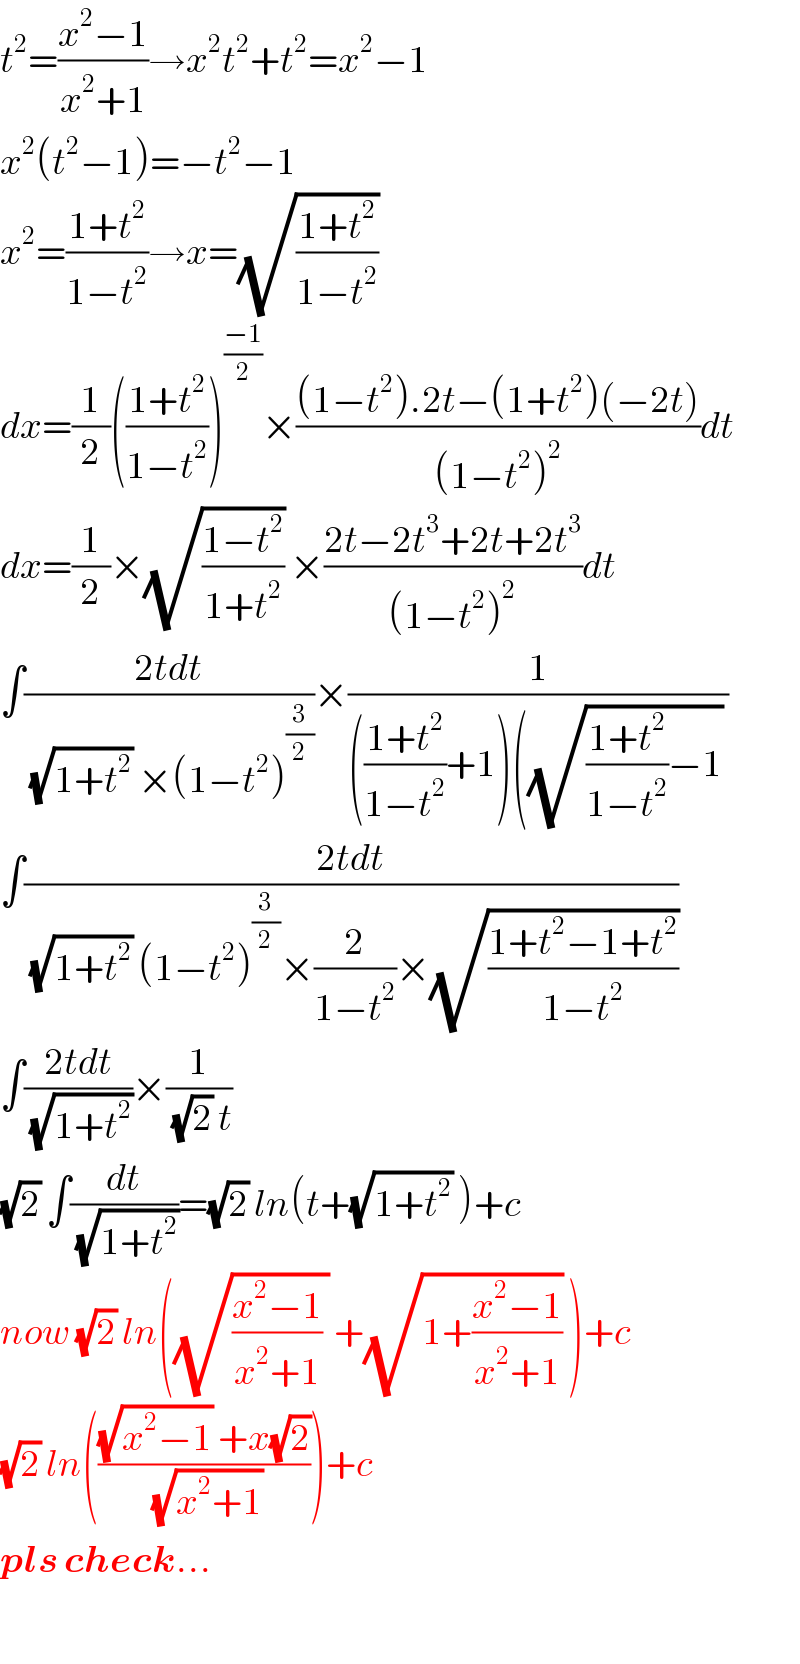 t^2 =((x^2 −1)/(x^2 +1))→x^2 t^2 +t^2 =x^2 −1  x^2 (t^2 −1)=−t^2 −1  x^2 =((1+t^2 )/(1−t^2 ))→x=(√((1+t^2 )/(1−t^2 )))   dx=(1/2)(((1+t^2 )/(1−t^2 )))^((−1)/2) ×(((1−t^2 ).2t−(1+t^2 )(−2t))/((1−t^2 )^2 ))dt  dx=(1/2)×(√((1−t^2 )/(1+t^2 ))) ×((2t−2t^3 +2t+2t^3 )/((1−t^2 )^2 ))dt  ∫((2tdt)/((√(1+t^2 )) ×(1−t^2 )^(3/2) ))×(1/((((1+t^2 )/(1−t^2 ))+1)((√(((1+t^2 )/(1−t^2 ))−1)) ))  ∫((2tdt)/((√(1+t^2 )) (1−t^2 )^(3/2) ×(2/(1−t^2 ))×(√((1+t^2 −1+t^2 )/(1−t^2 )))))  ∫((2tdt)/(√(1+t^2 )))×(1/((√2) t))  (√2) ∫(dt/(√(1+t^2 )))=(√2) ln(t+(√(1+t^2 )) )+c  now (√2) ln((√(((x^2 −1)/(x^2 +1)) )) +(√(1+((x^2 −1)/(x^2 +1)))) )+c  (√2) ln((((√(x^2 −1)) +x(√2))/(√(x^2 +1))))+c  pls check...    